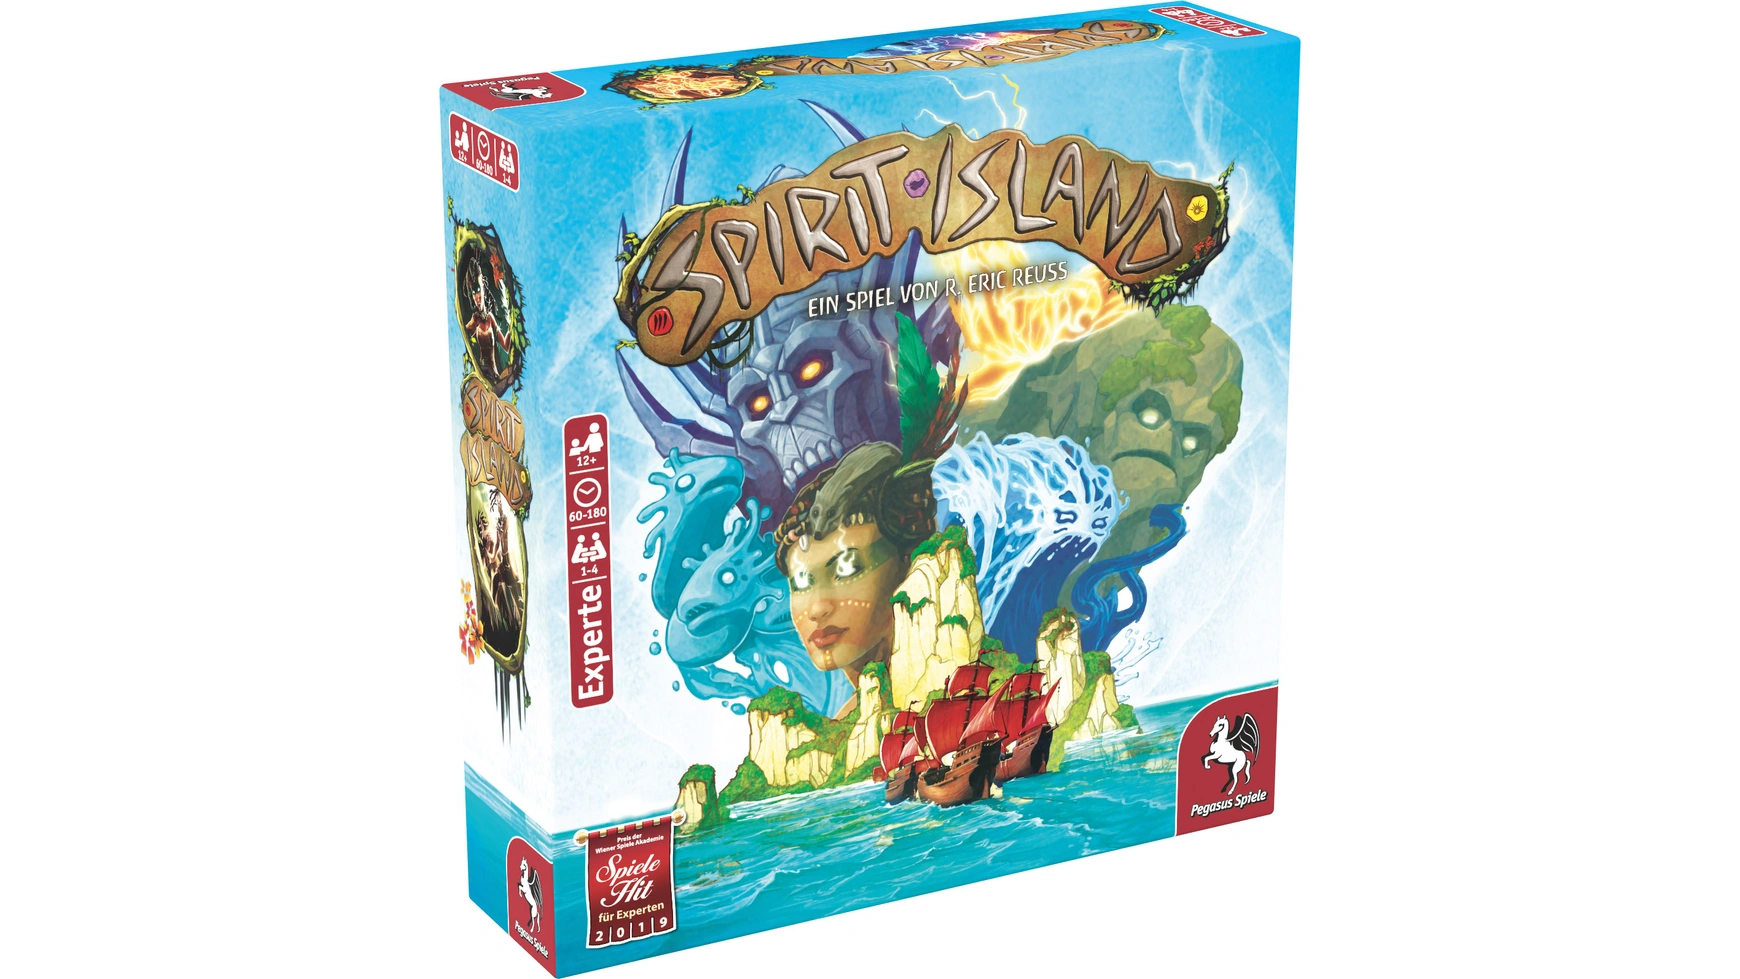 Pegasus Spirit Island (немецкое издание) экспертная игра